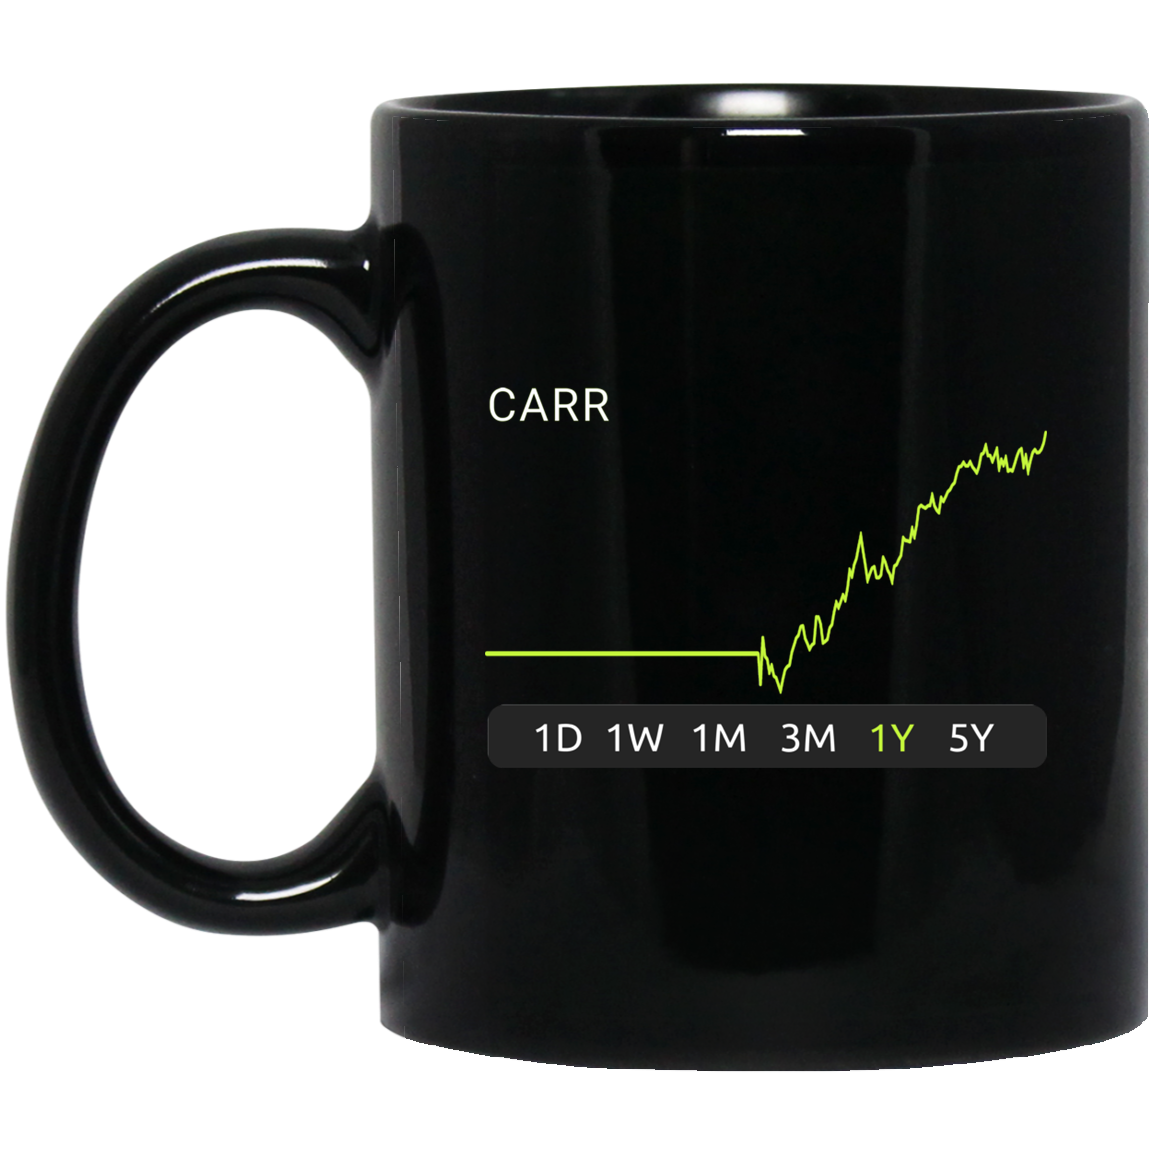 CARR Stock 1y Mug